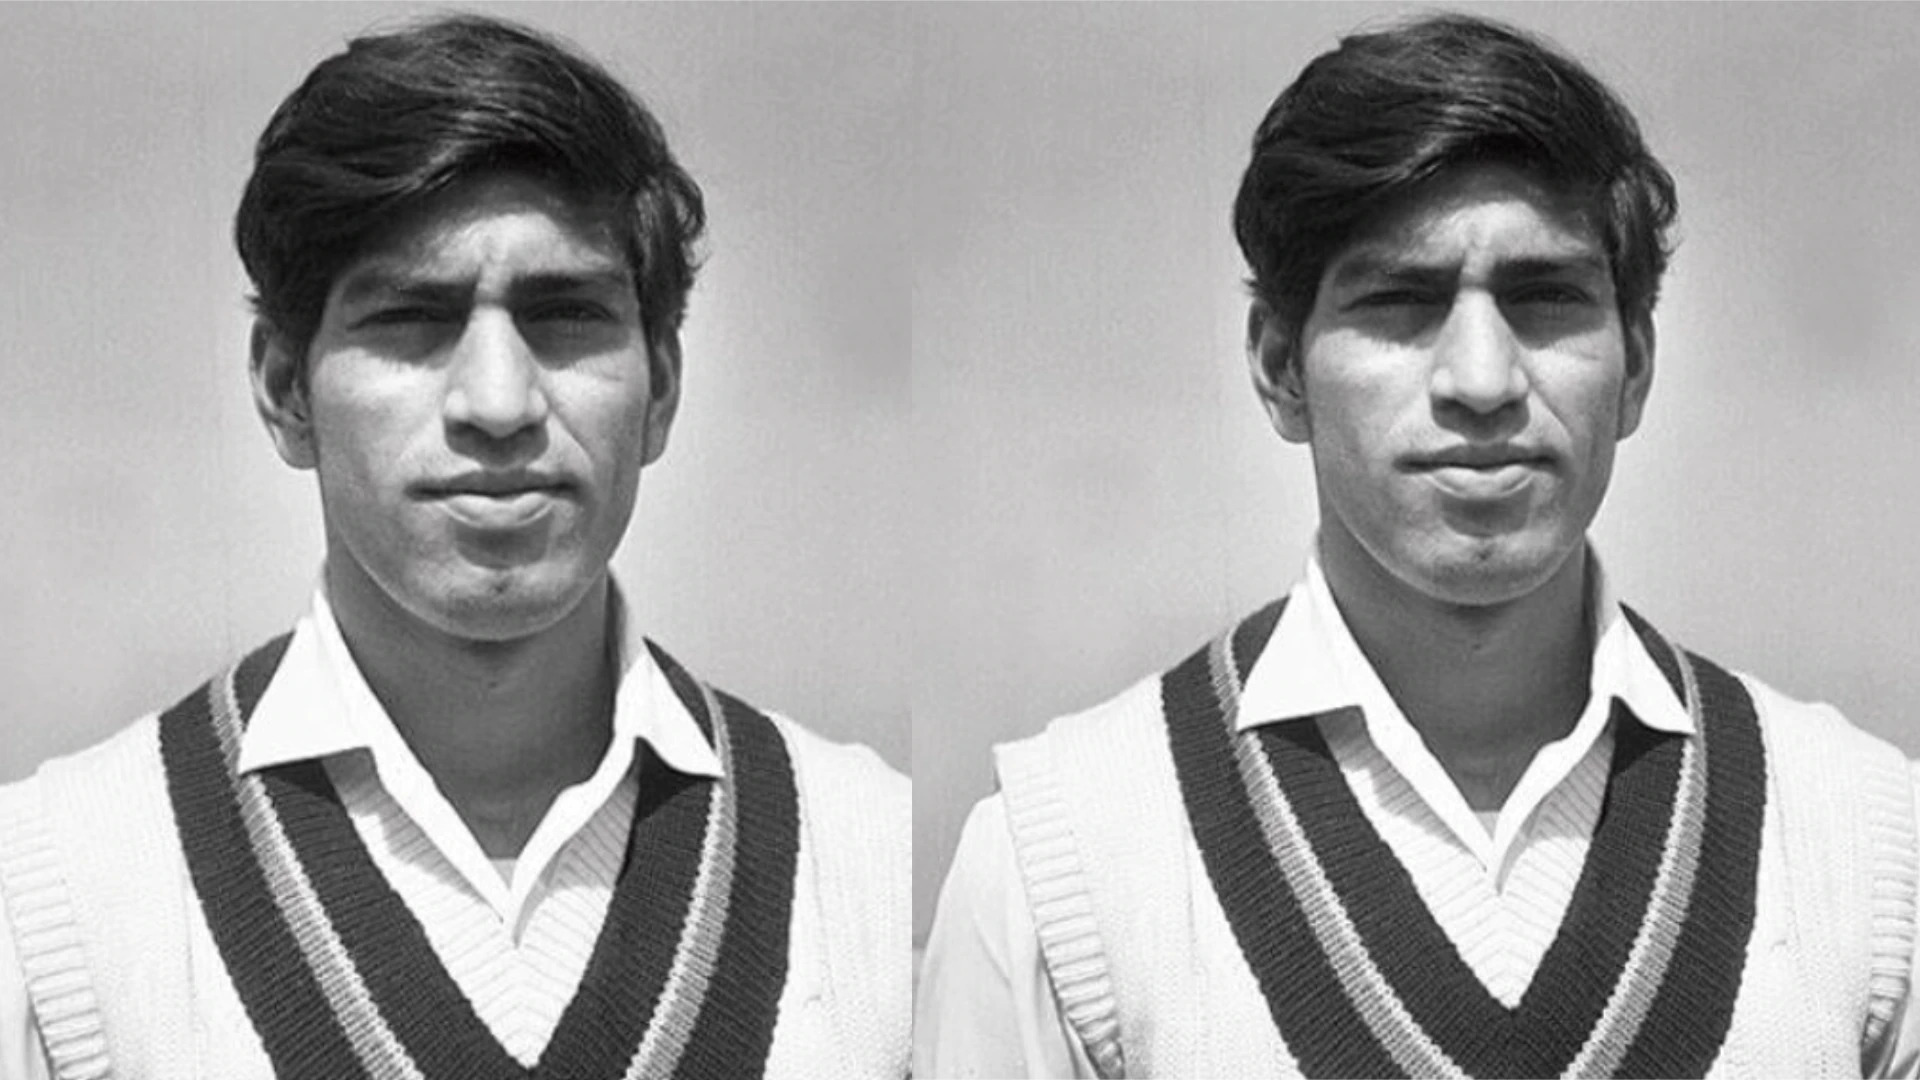 पाकिस्तान टीम के लिए खेल चुके हैं ये 7 गैर मुस्लिम क्रिकेटर, एक खिलाड़ी के साथ टीम ने की थी शर्मनाक हरकत 2